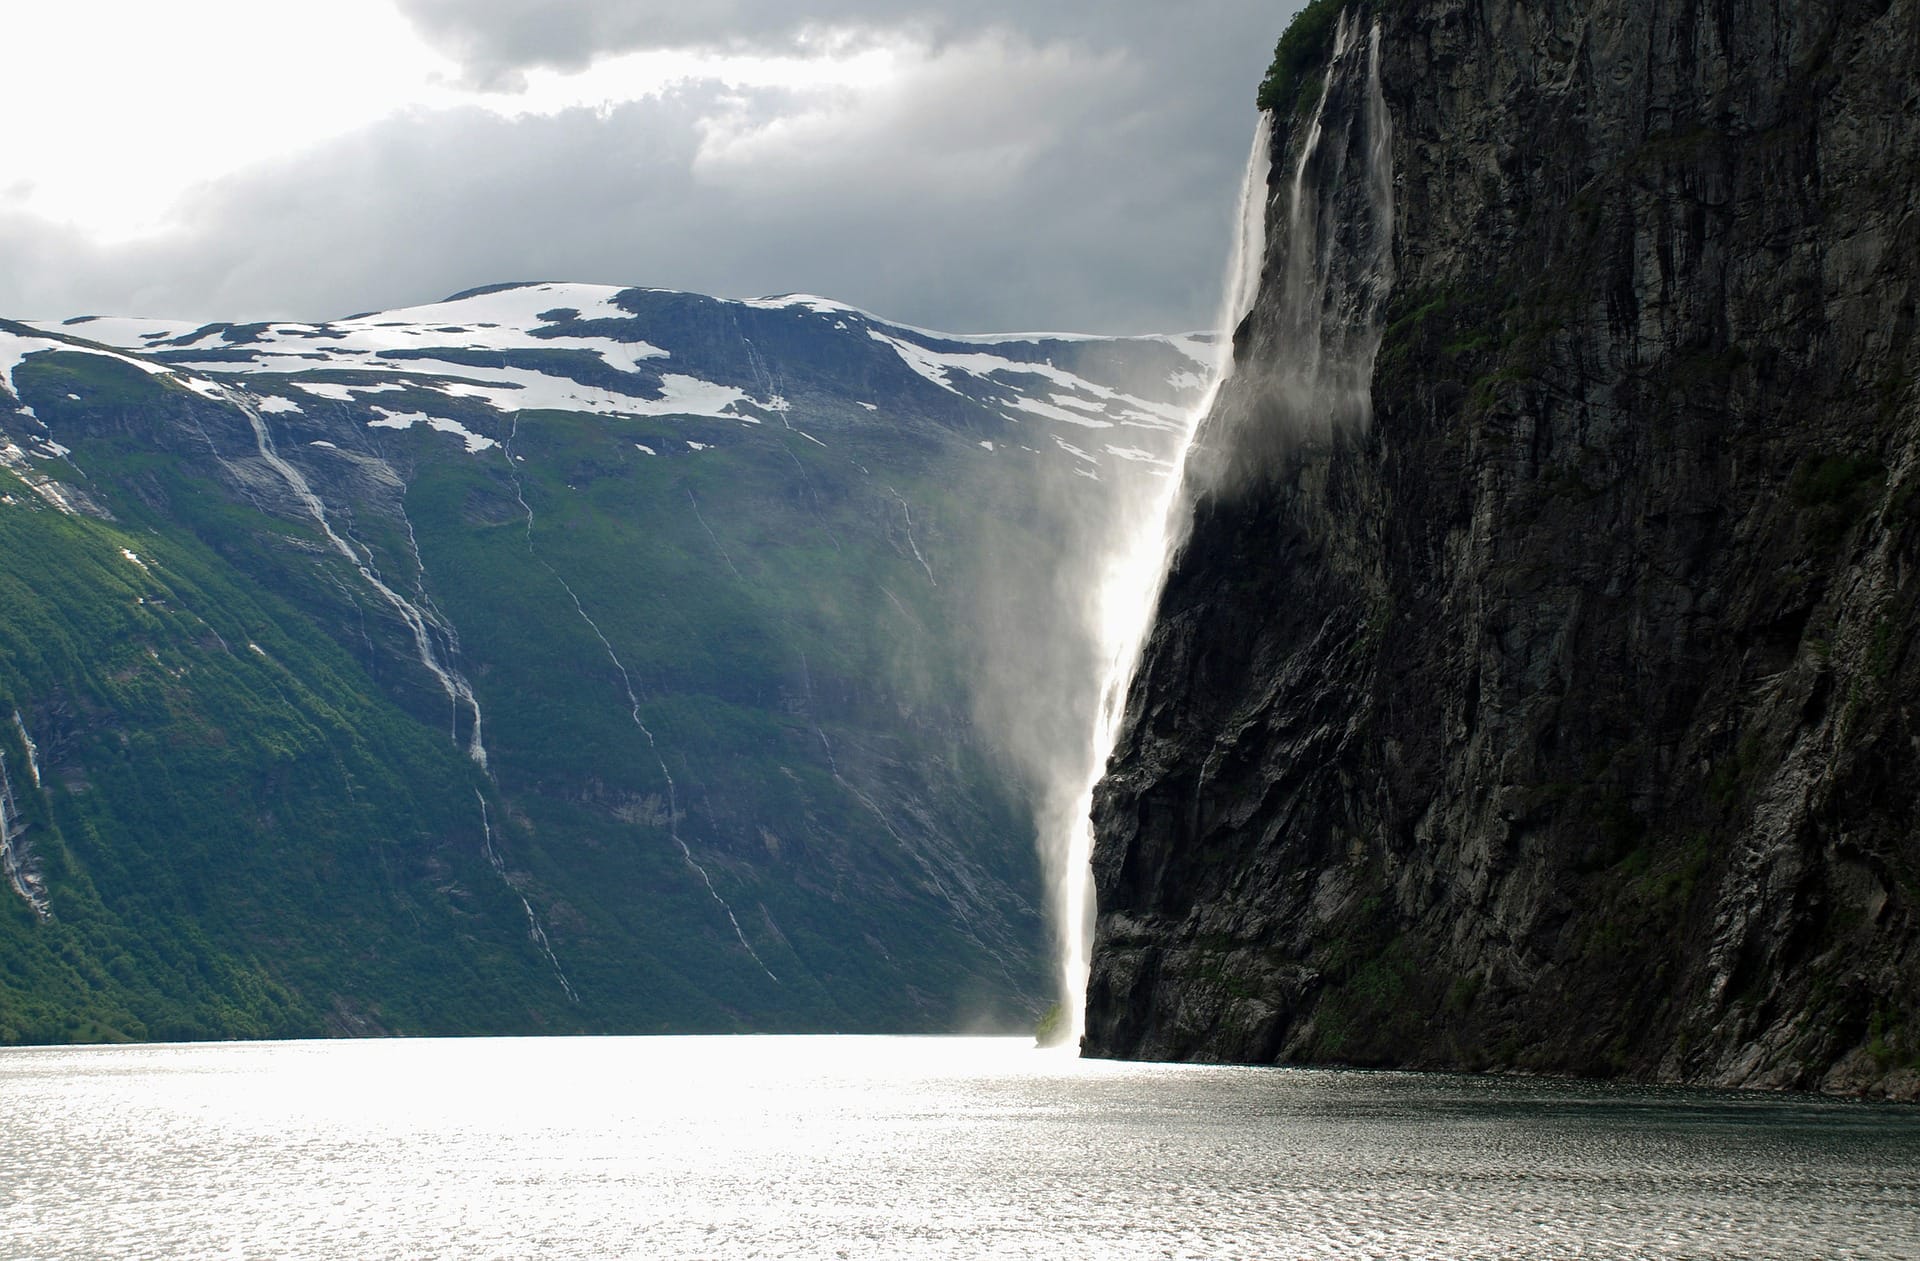 Fjordlandschaften Norwegens mit zwei Bergen: Norwegen ist bekannt für seine mehr als tausend Fjorde, die jeweils umgeben sind von majestätischen Bergen.